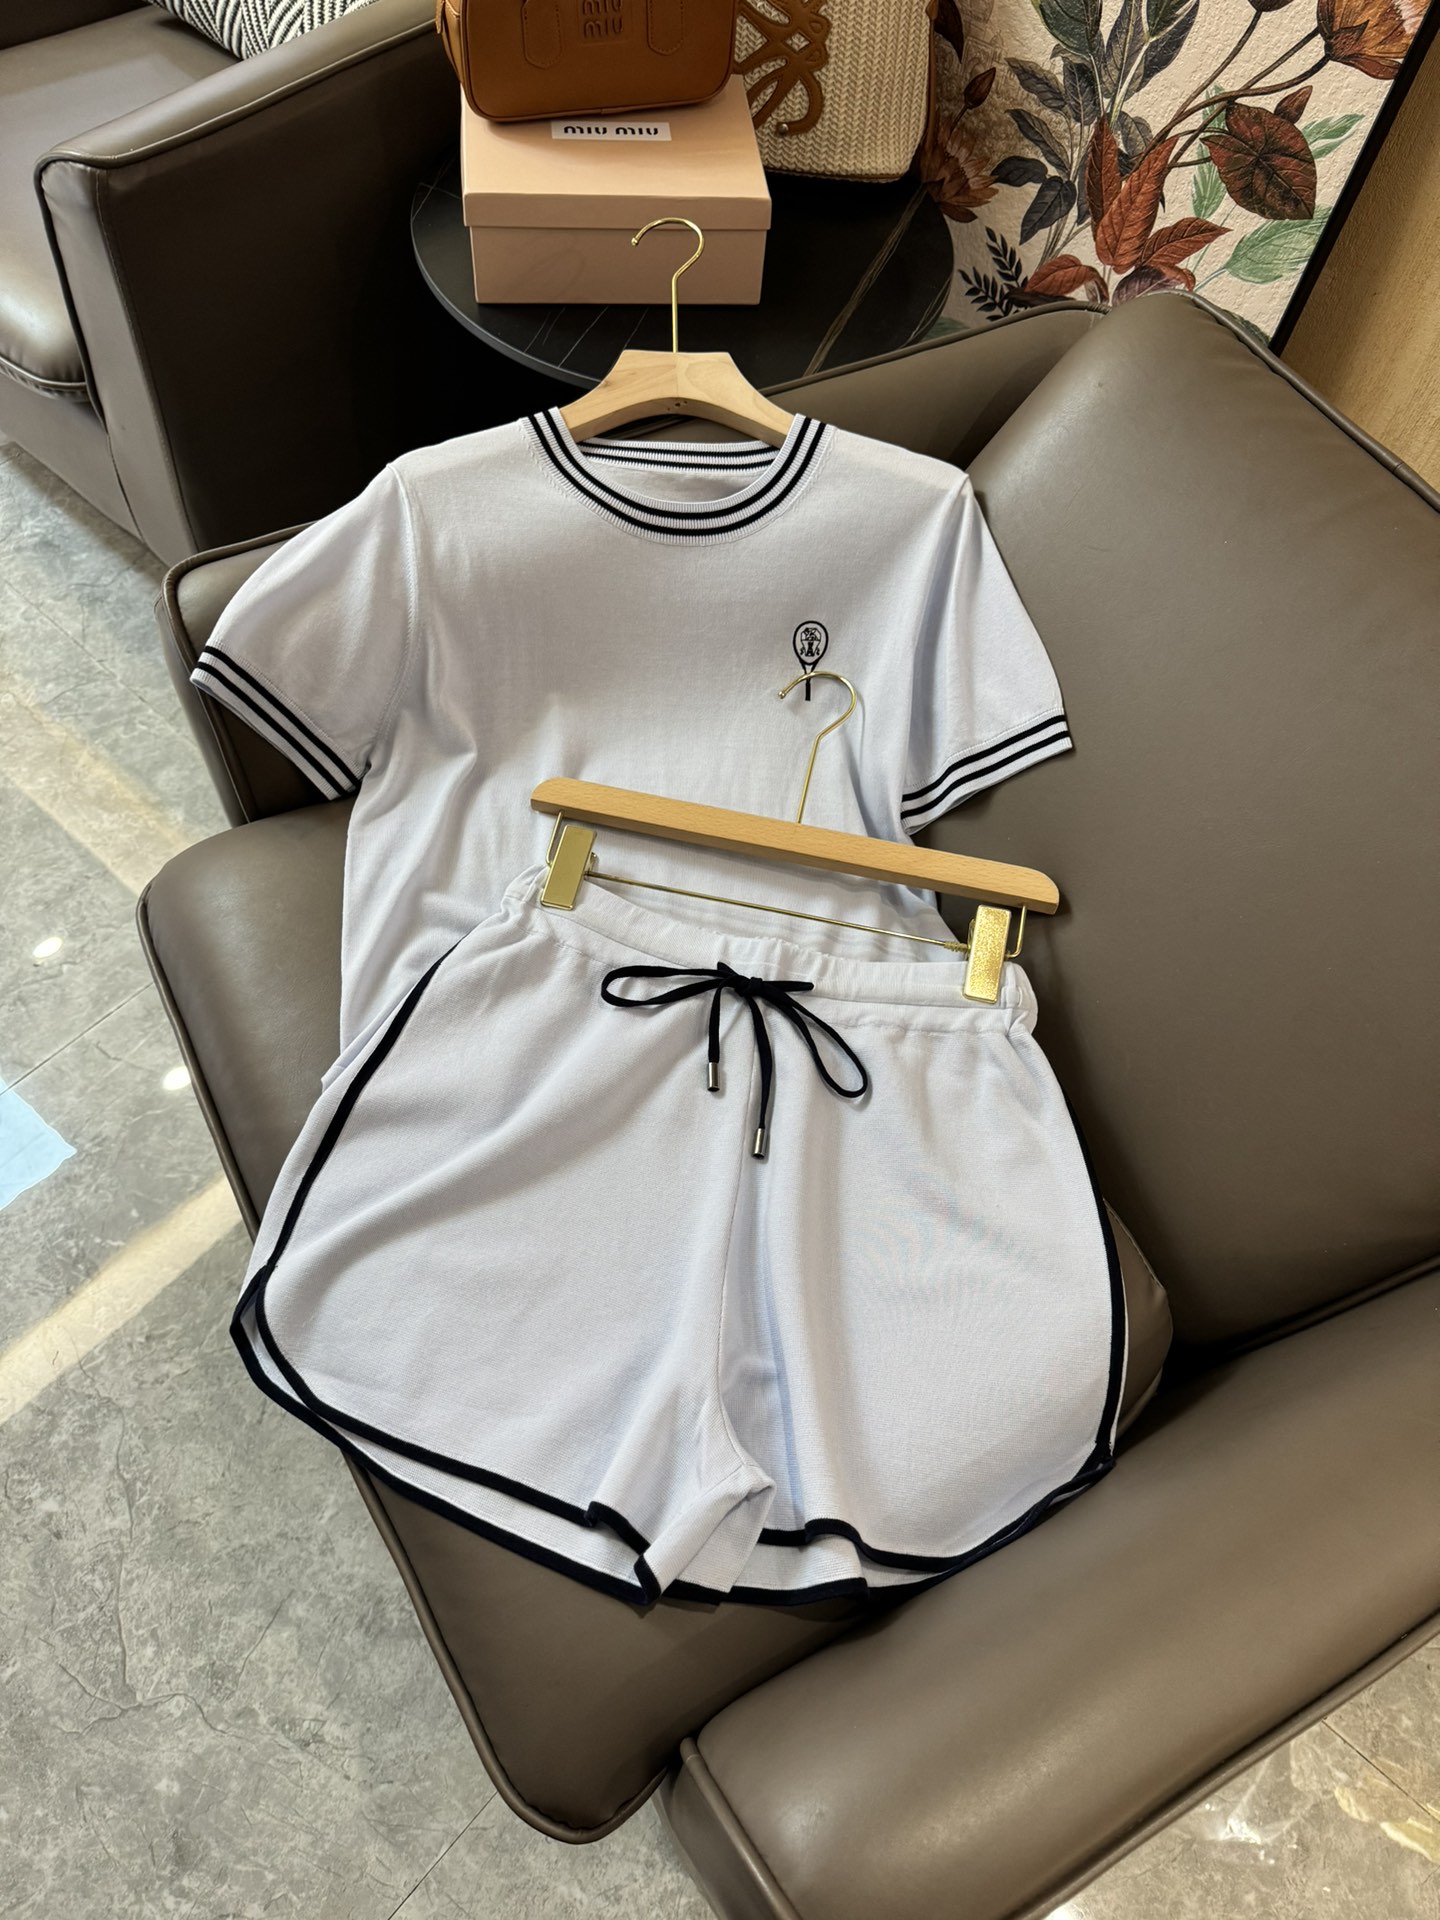 FBC008#新款套装⚠️Pebdydb????\nBC 棒球服系列 天丝短袖针织上衣➕天丝针织短裤 套装白色 蓝色 浅灰色 SML